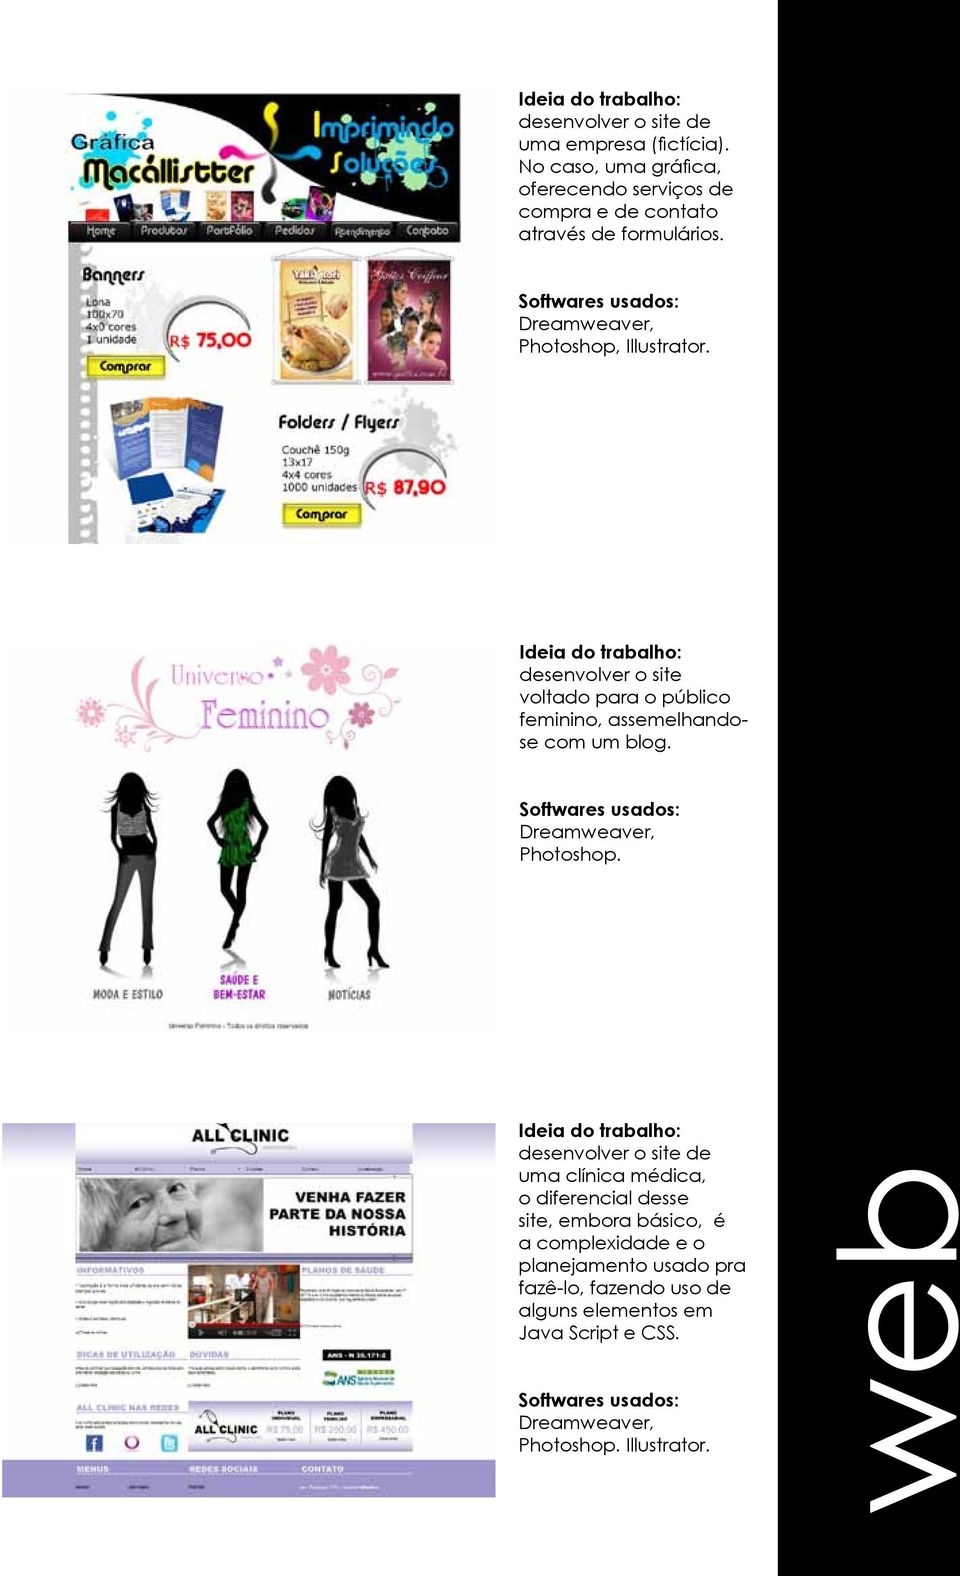 Dreamweaver, Photoshop, Illustrator. desenvolver o site voltado para o público feminino, assemelhandose com um blog.